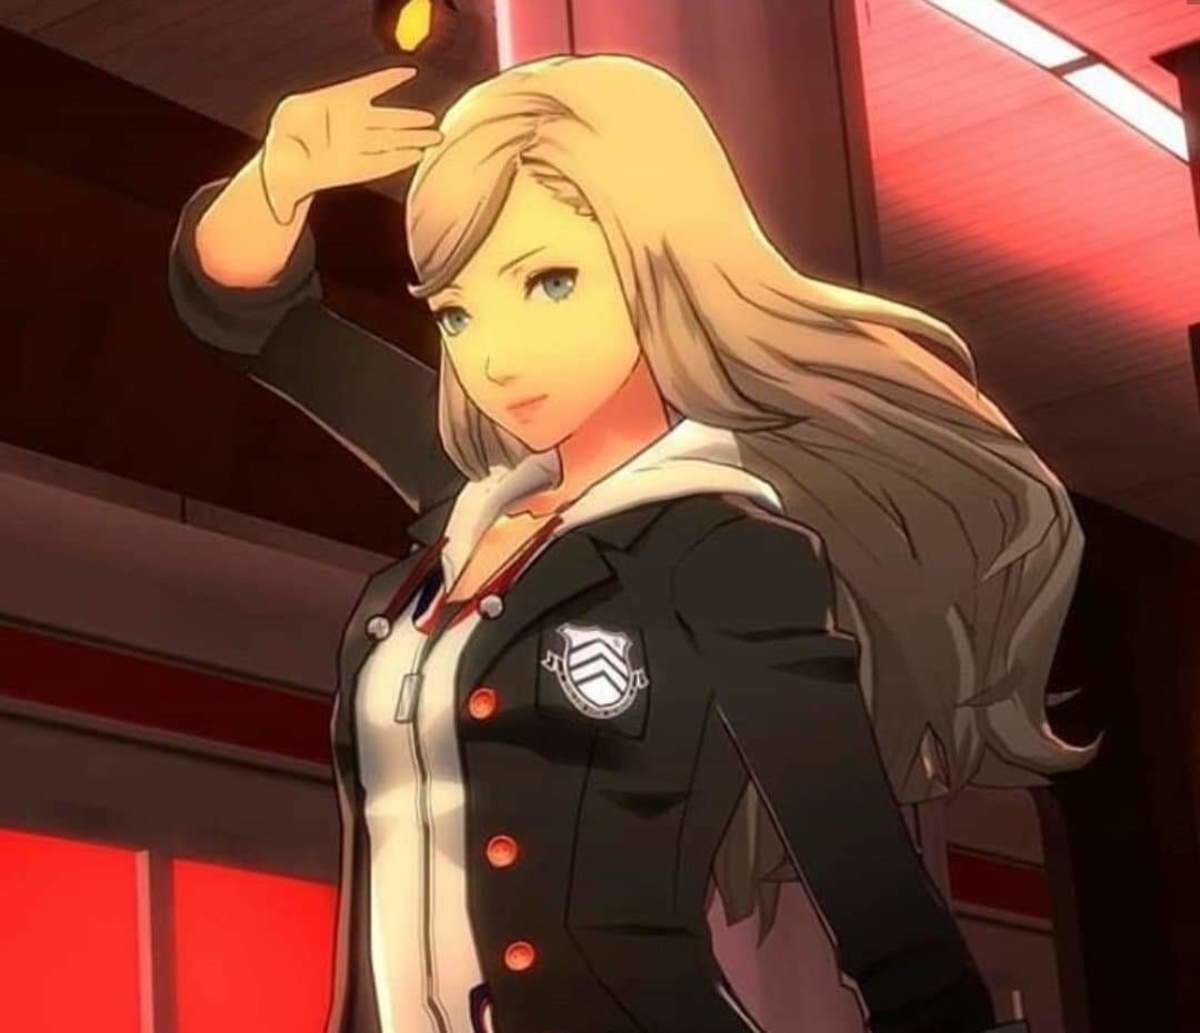 Ann with her hair down. 